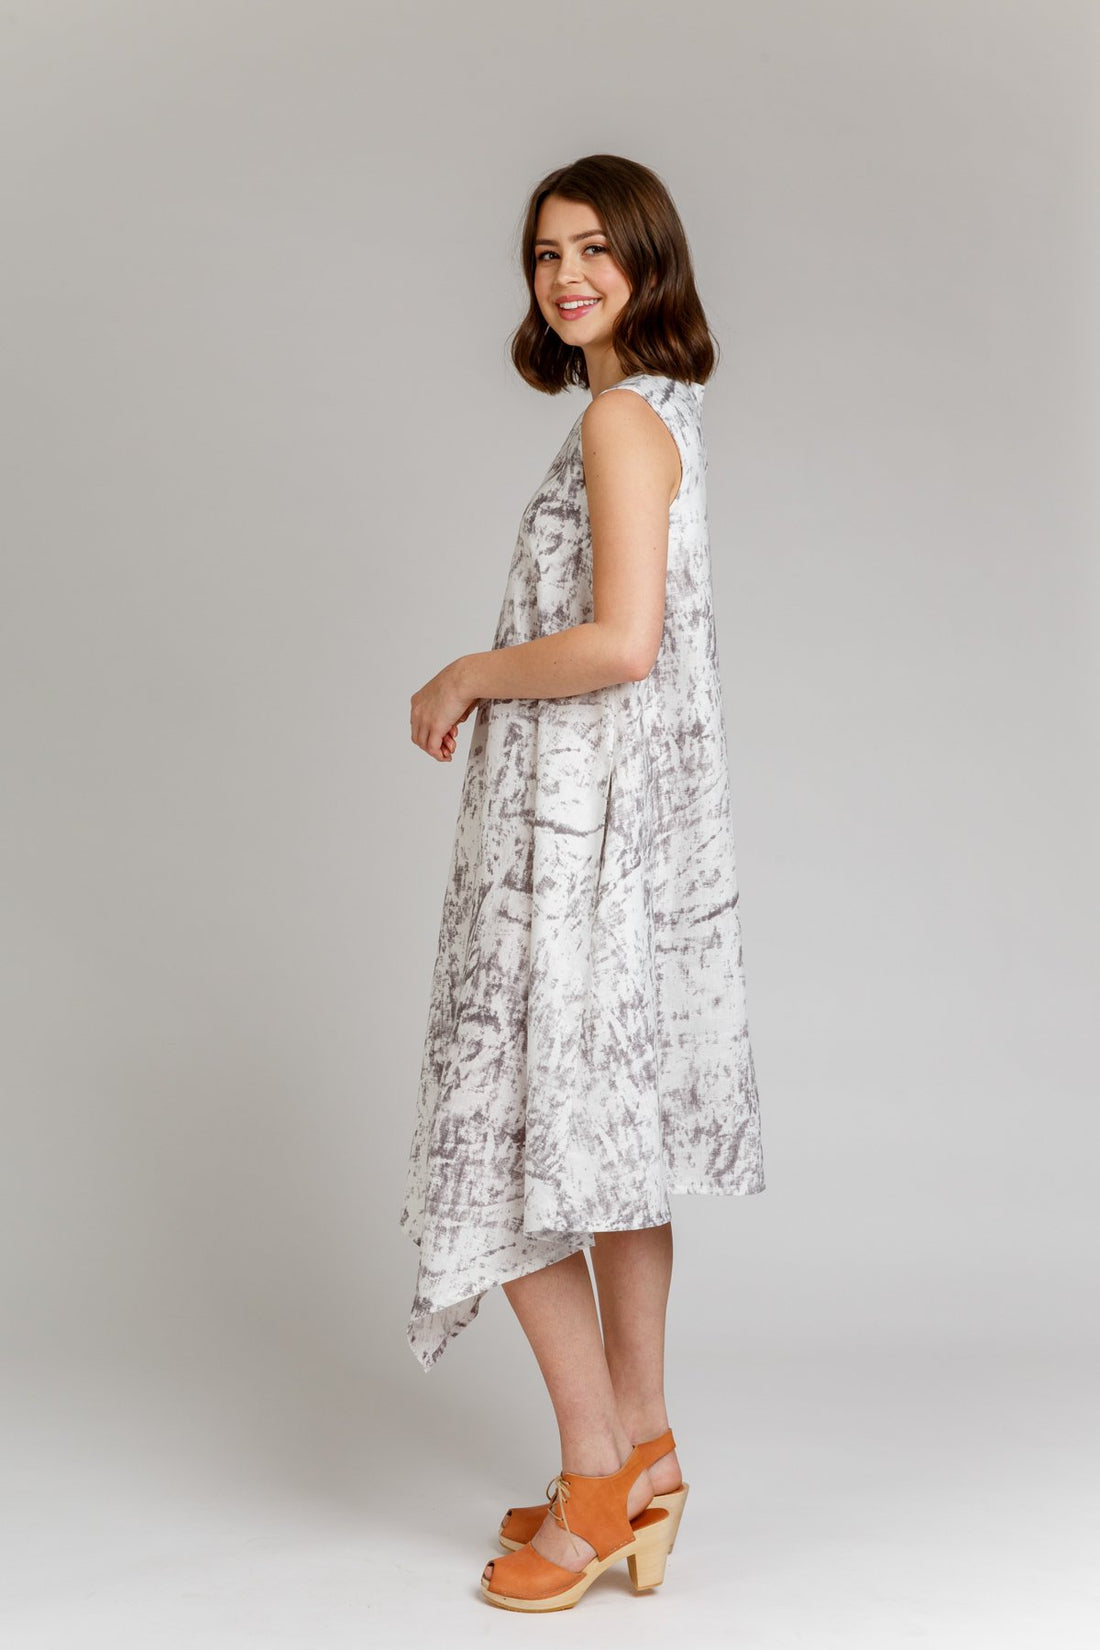 Papírový střih Floreat dress & blouse